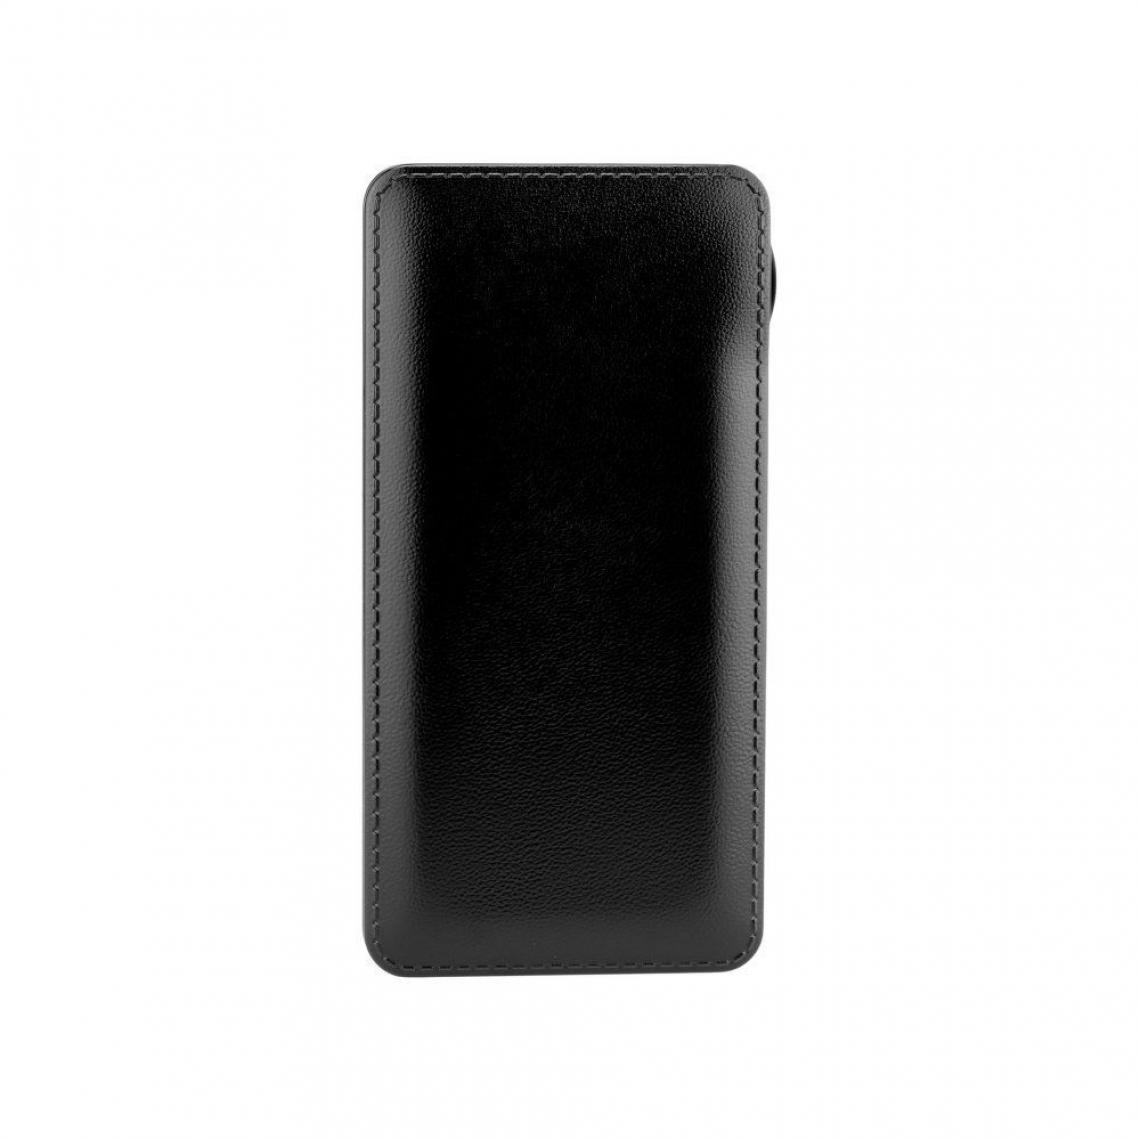 Ozzzo - Chargeur batterie externe 10000mAh powerbank ozzzo noir pour Gionee F8 Neo - Autres accessoires smartphone